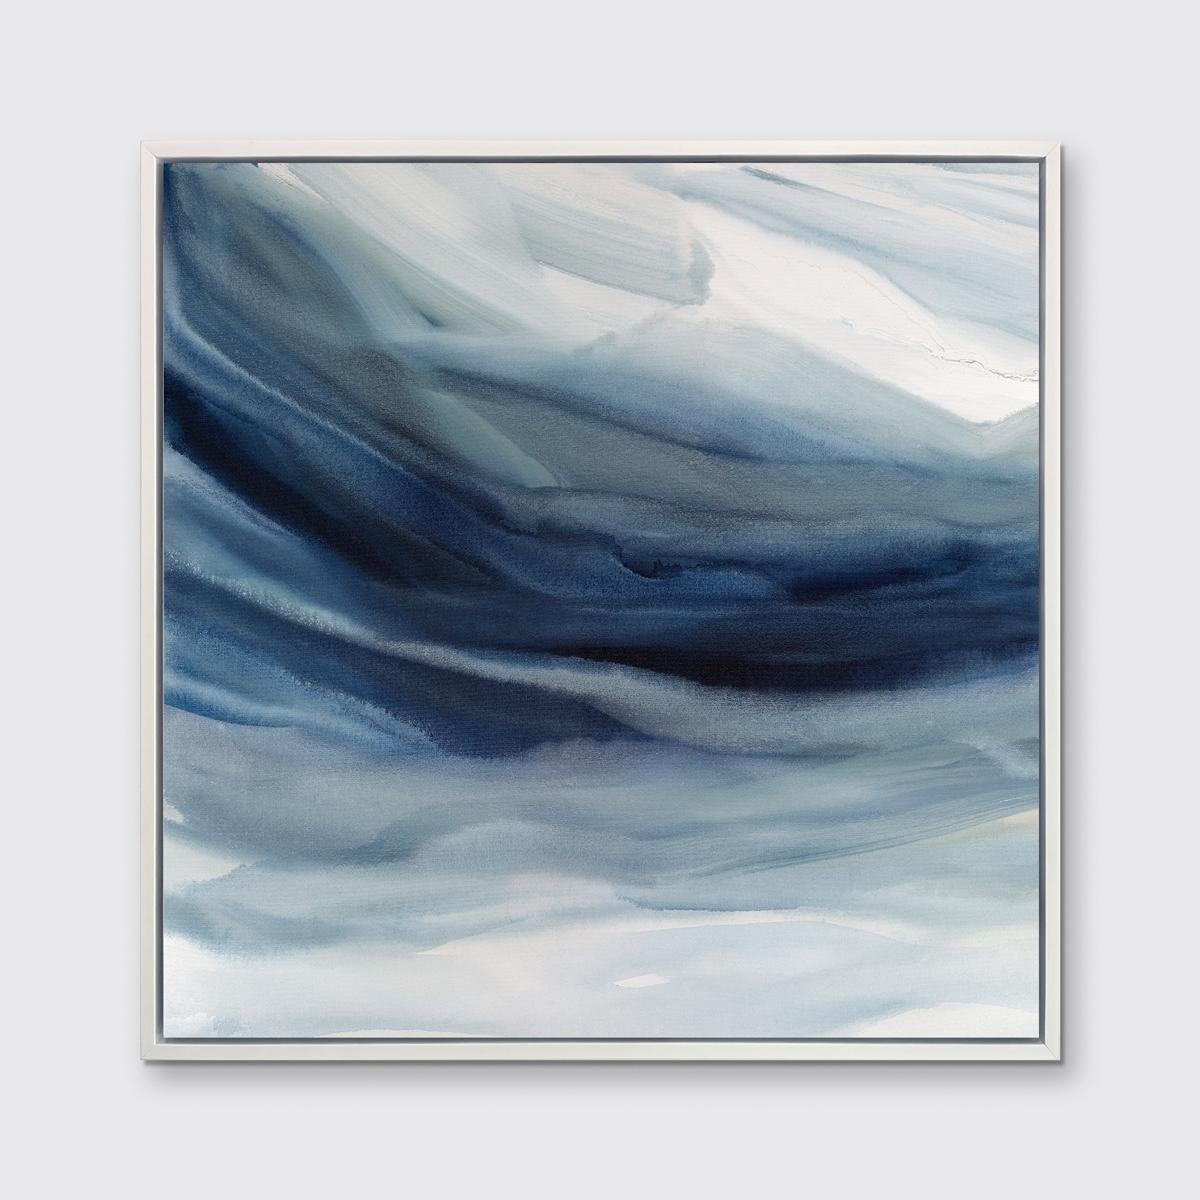 Dieser zeitgenössische Druck in limitierter Auflage von Teodora Guererra zeigt kühle Blau- und Weißtöne mit einer abstrakten Küstenästhetik. Dieser Druck passt hervorragend zu Indigo Sea II - einem Druck in limitierter Auflage desselben Künstlers.